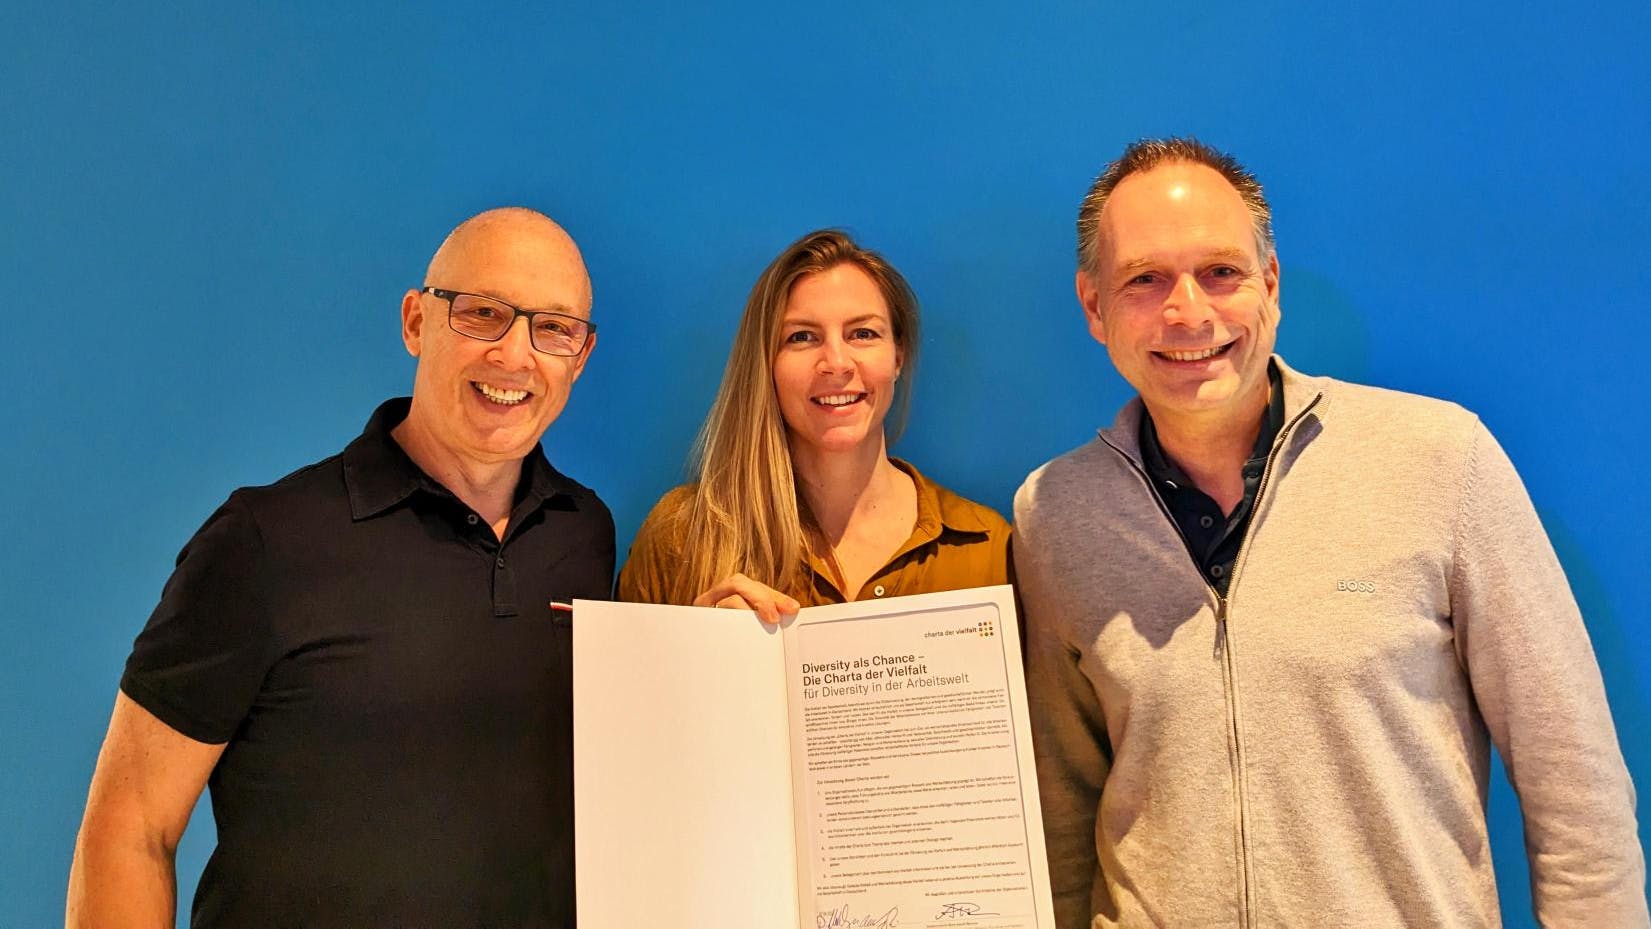 Daniel Attallah, Nora Engels und Marc Rendel mit der unterzeichneten Charta der Vielfalt vor dem Pixum Logo